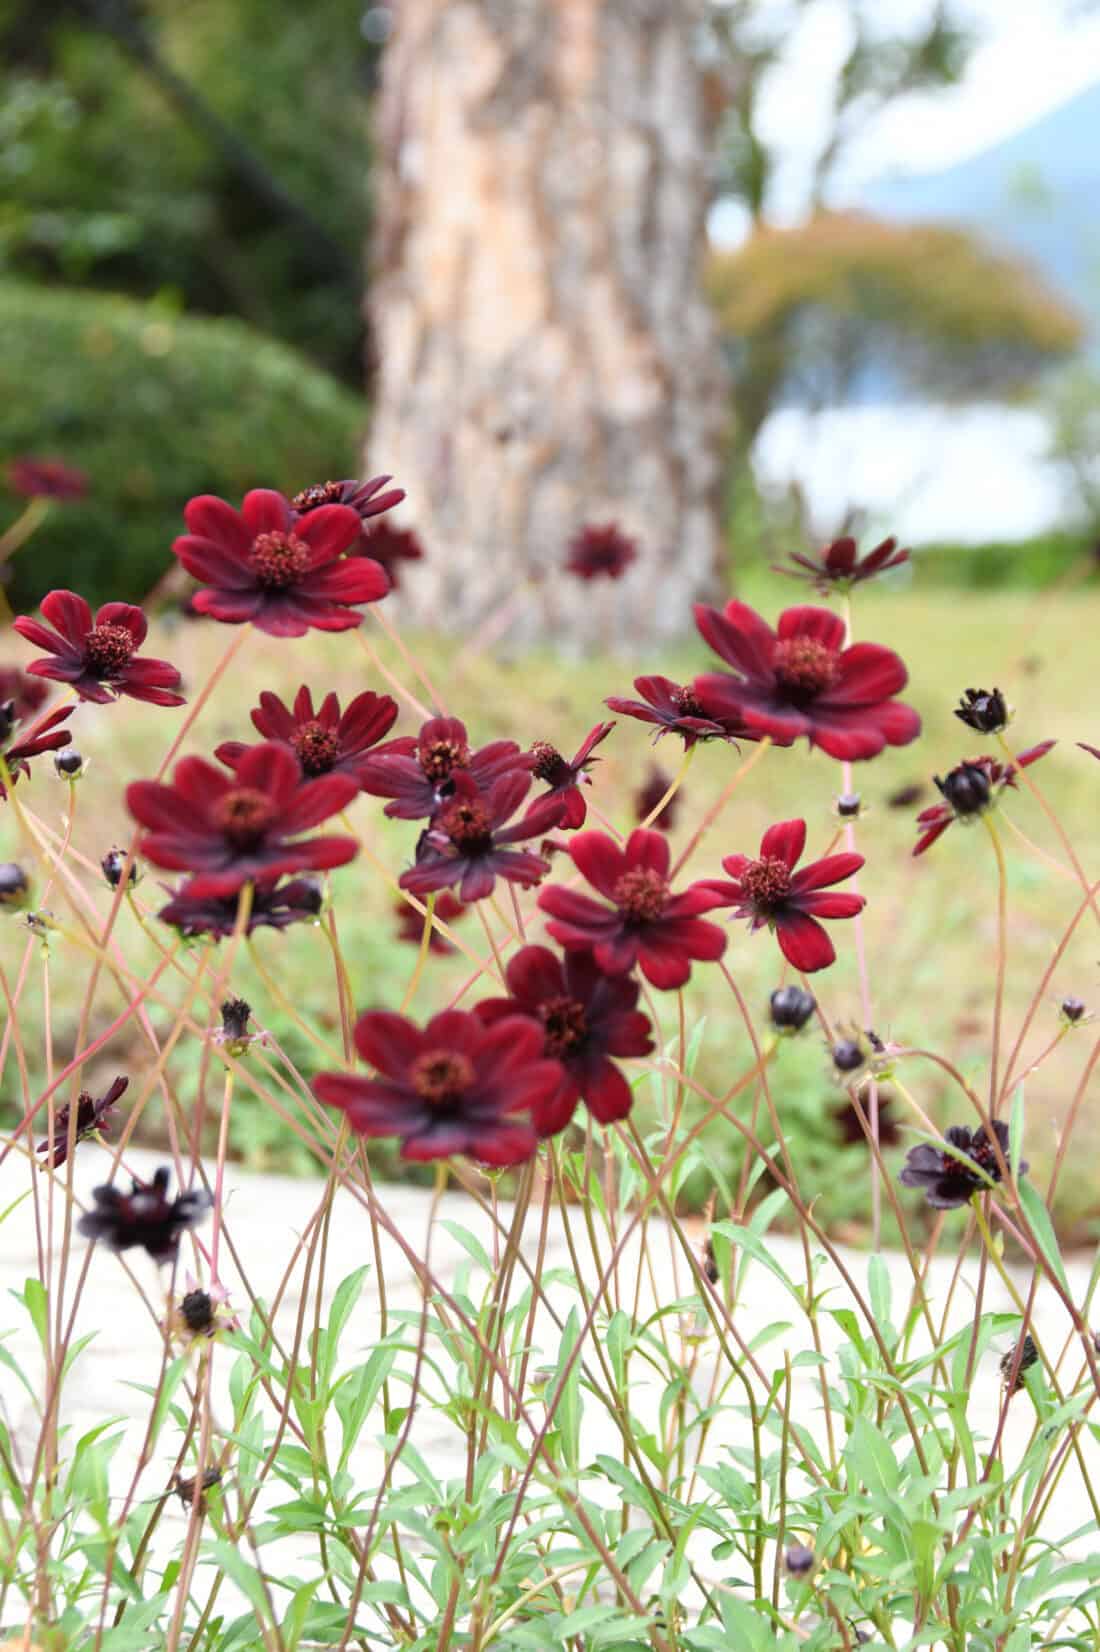 Chocolate cosmos - red or  dark burgundy brown flowers